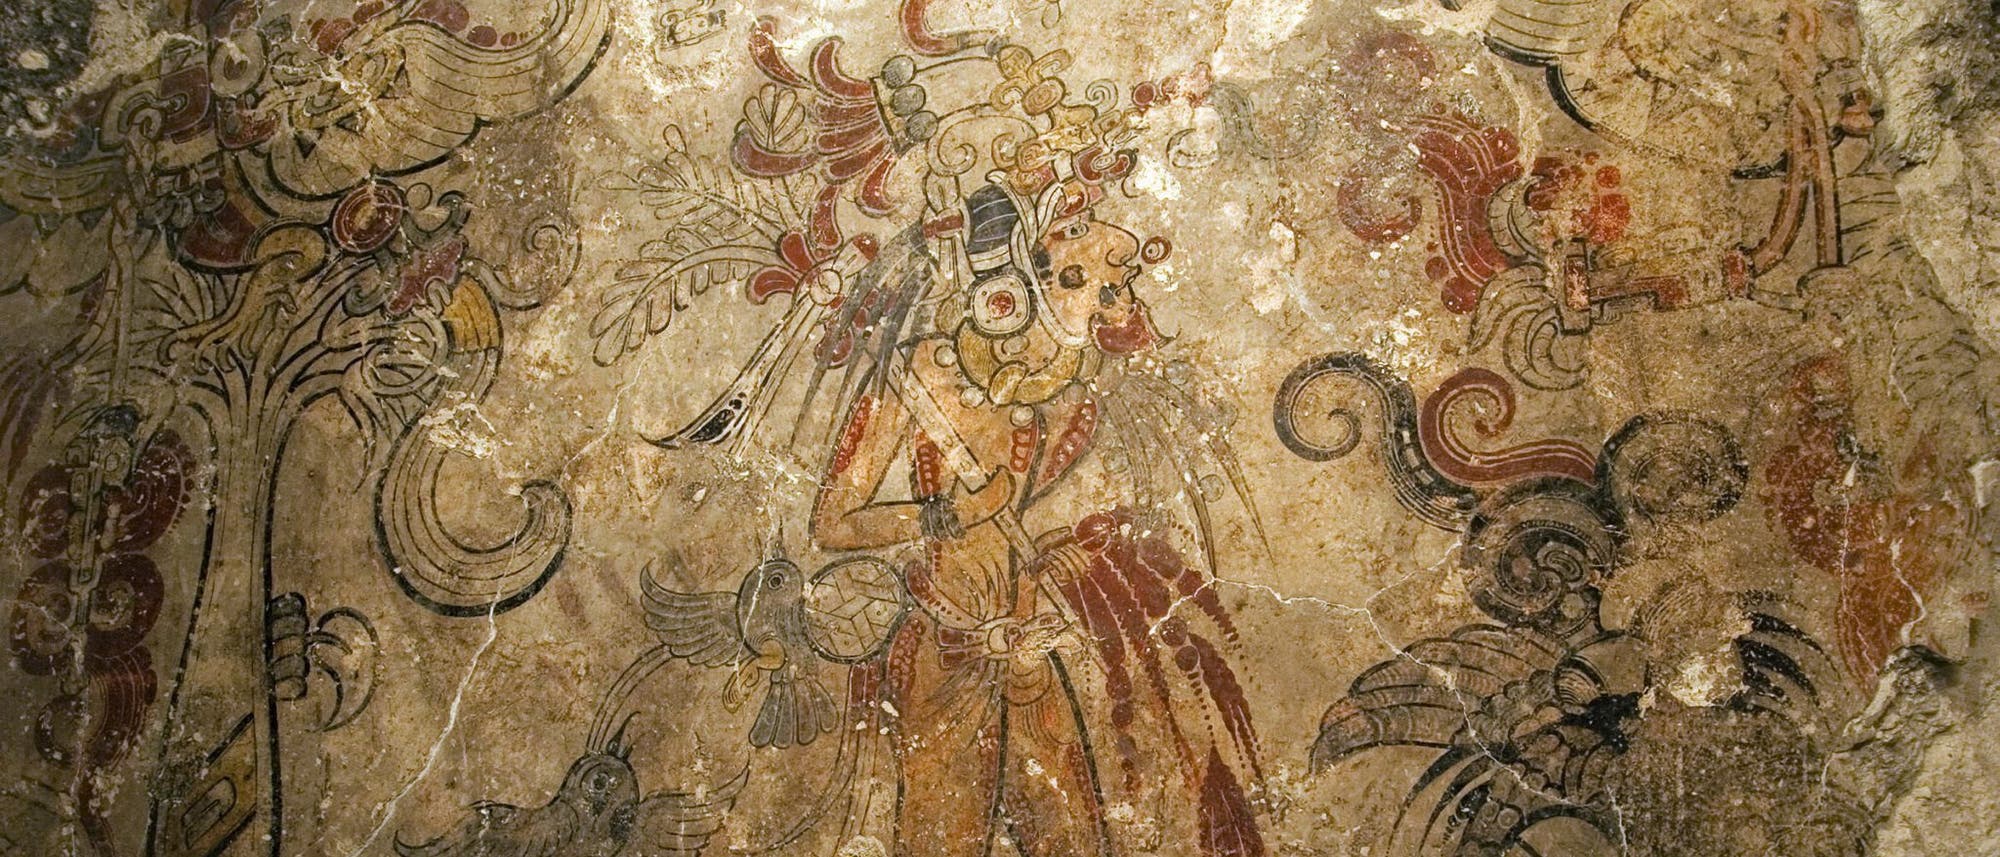 Wandmalerei der Mayakultur von San Bartolo, Guatemala, aus der Zeit um 100 v. Chr.